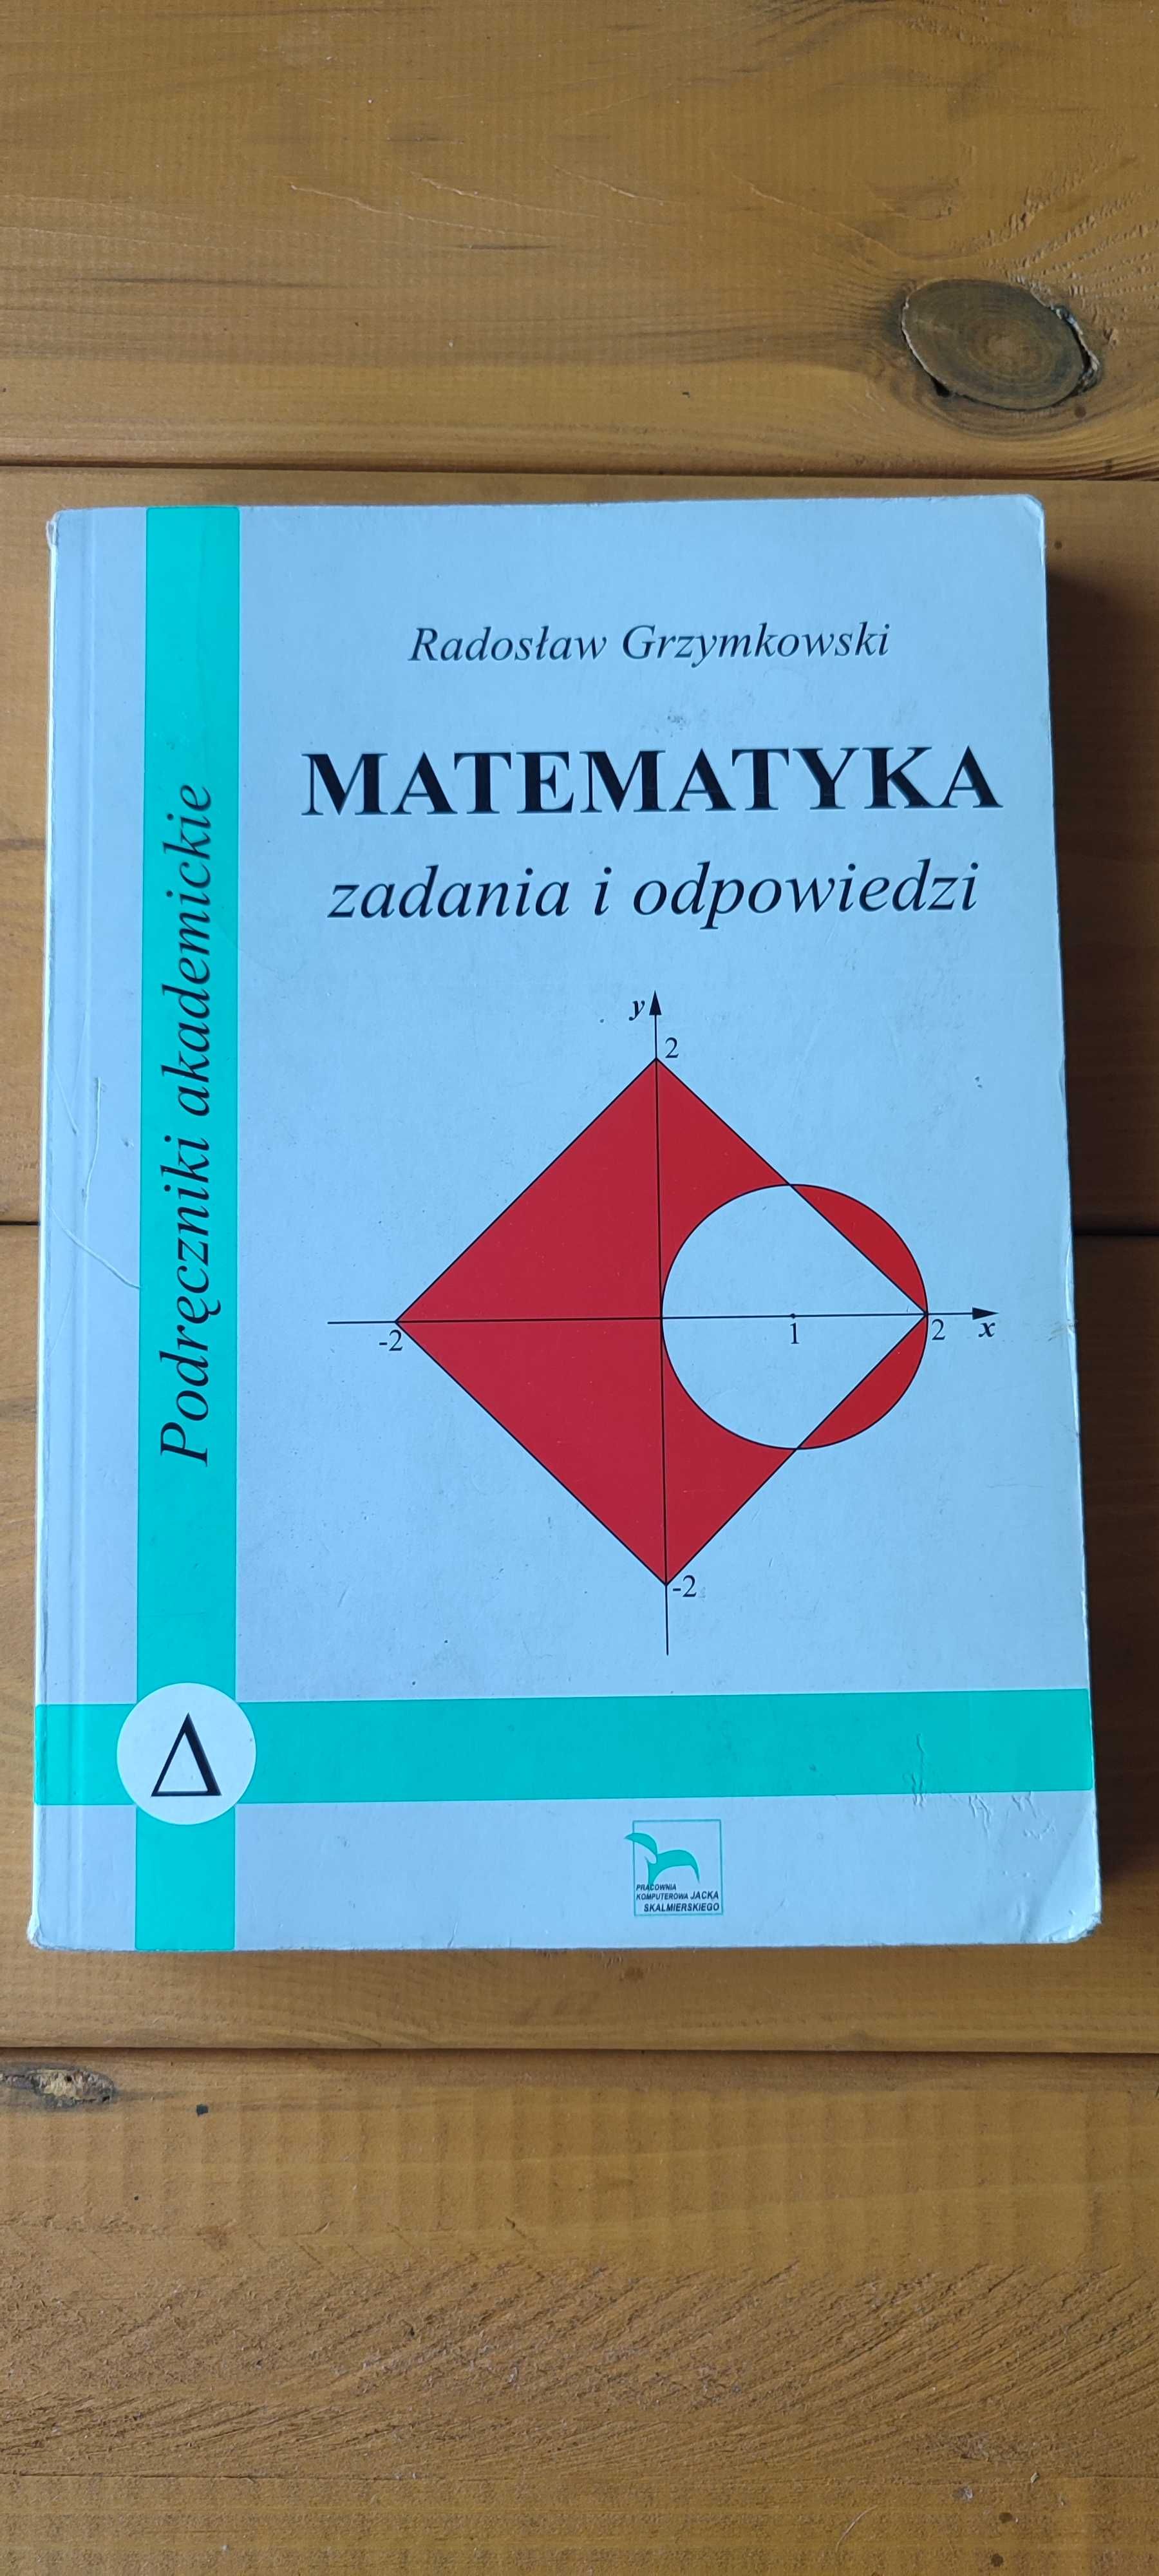 Matematyka zadania i odpowiedzi - Radosław Grzymkowski